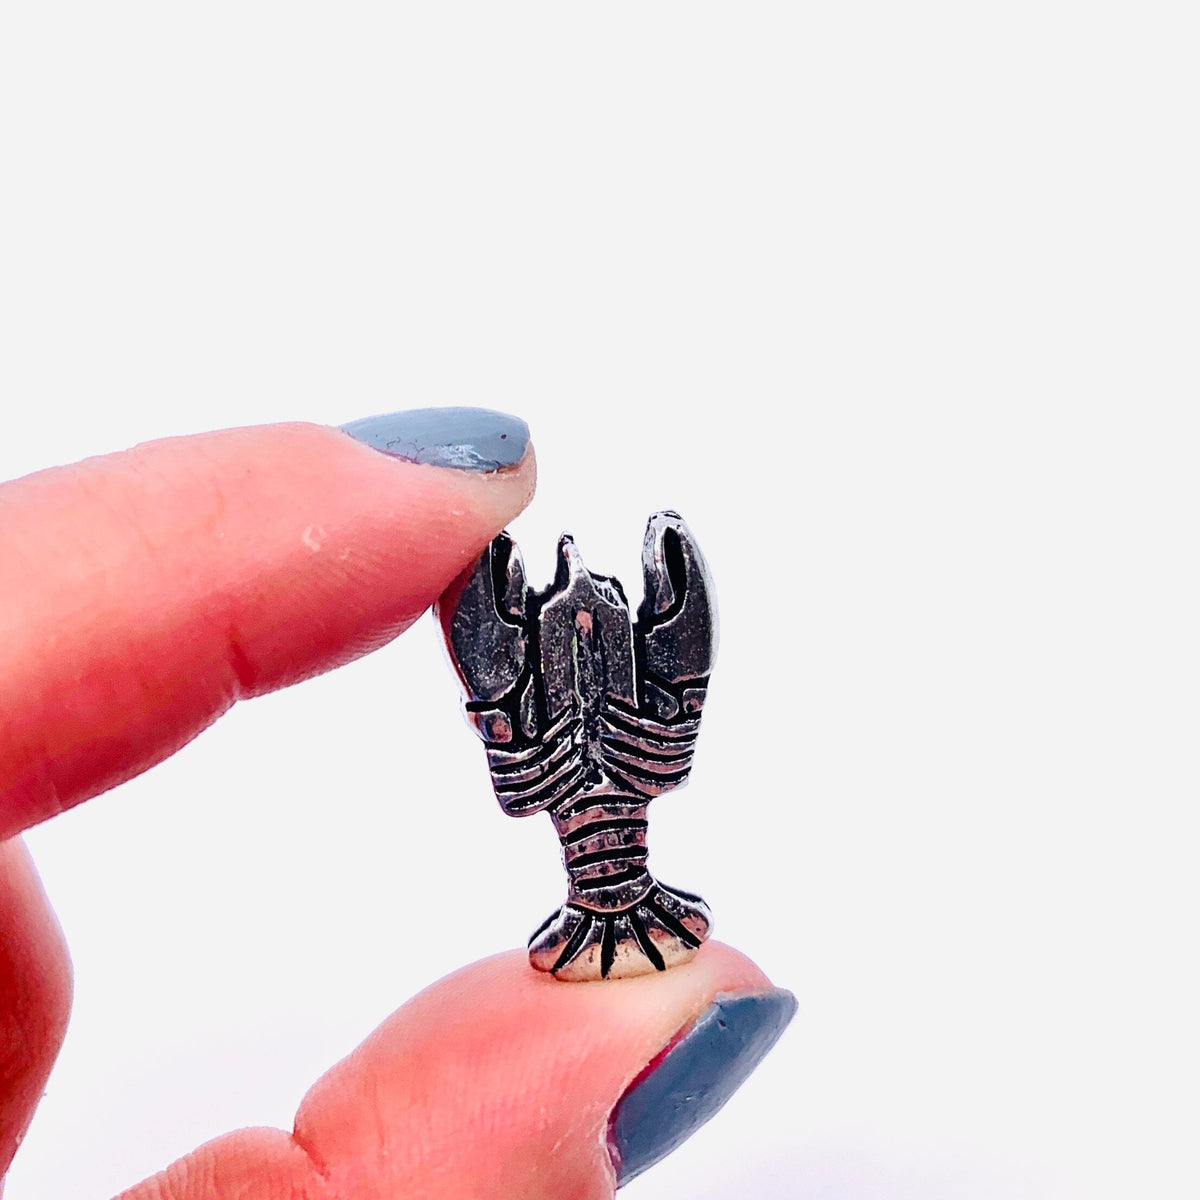 Miniature Pewter Figurine, Lobster Miniature Basic Spirit 